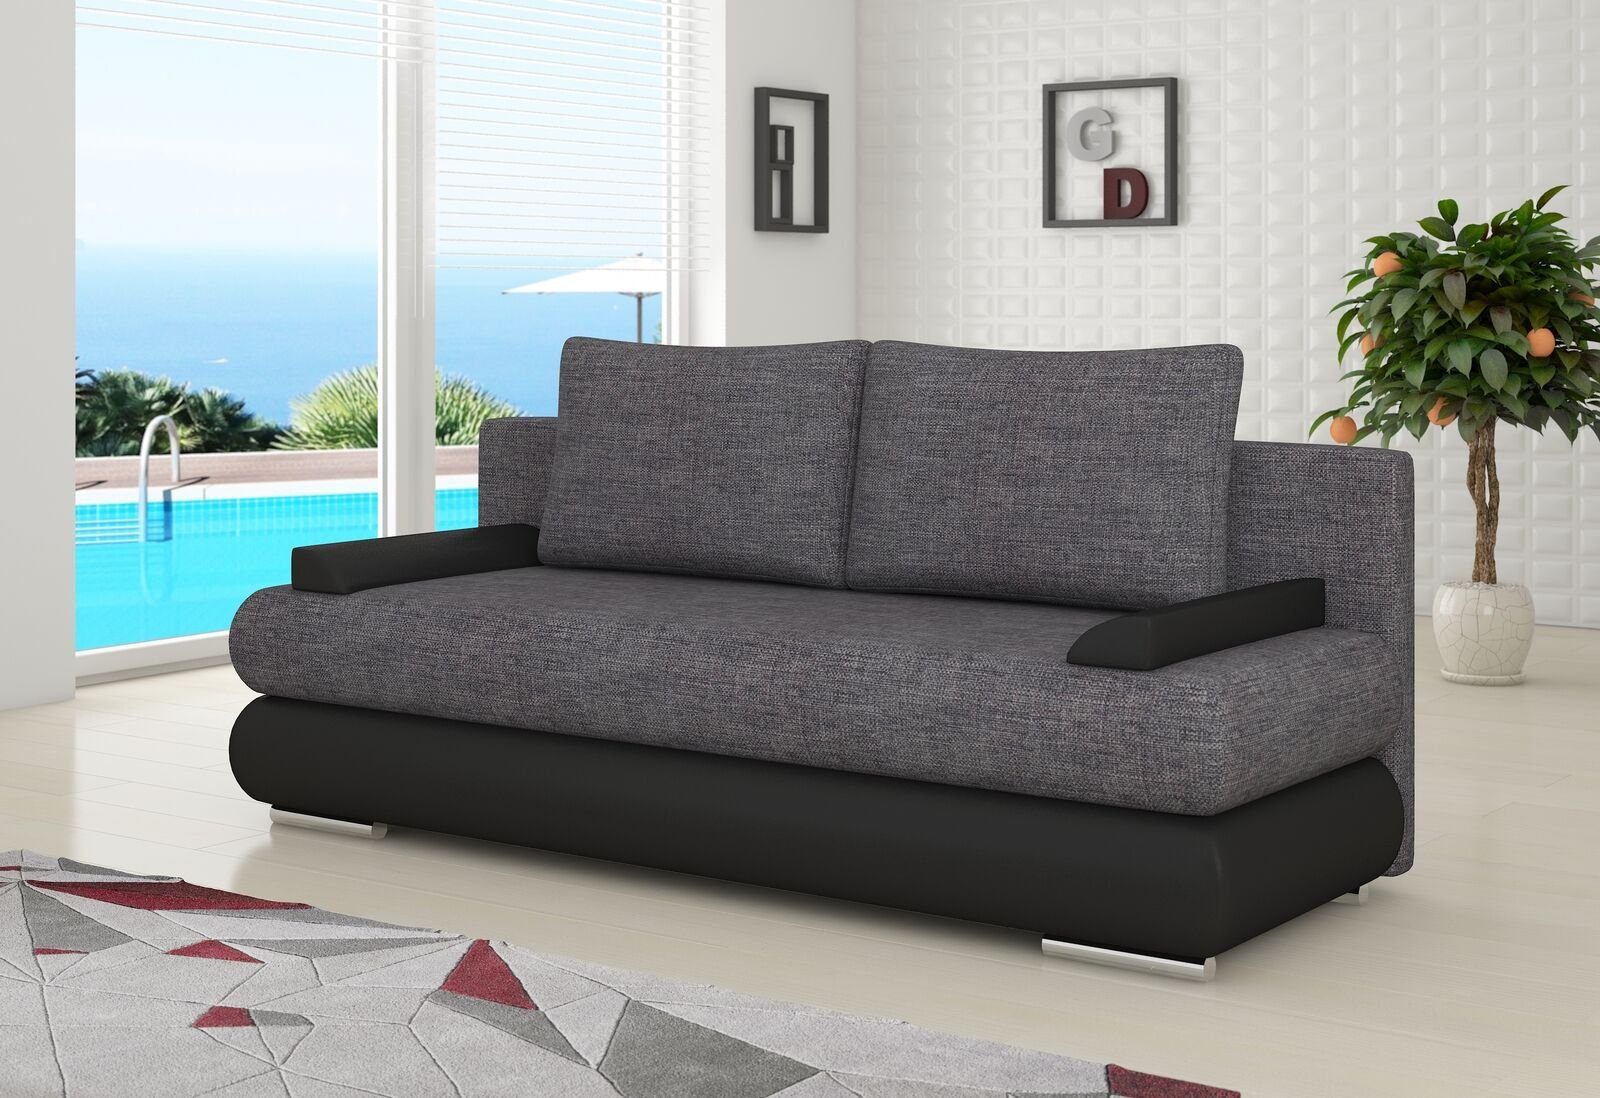 JVmoebel Sofa, Design Schlafsofa Couch Polster 3 Sitzer Stoff Couch Gästezimmer Dunkelgrau / Schwarz